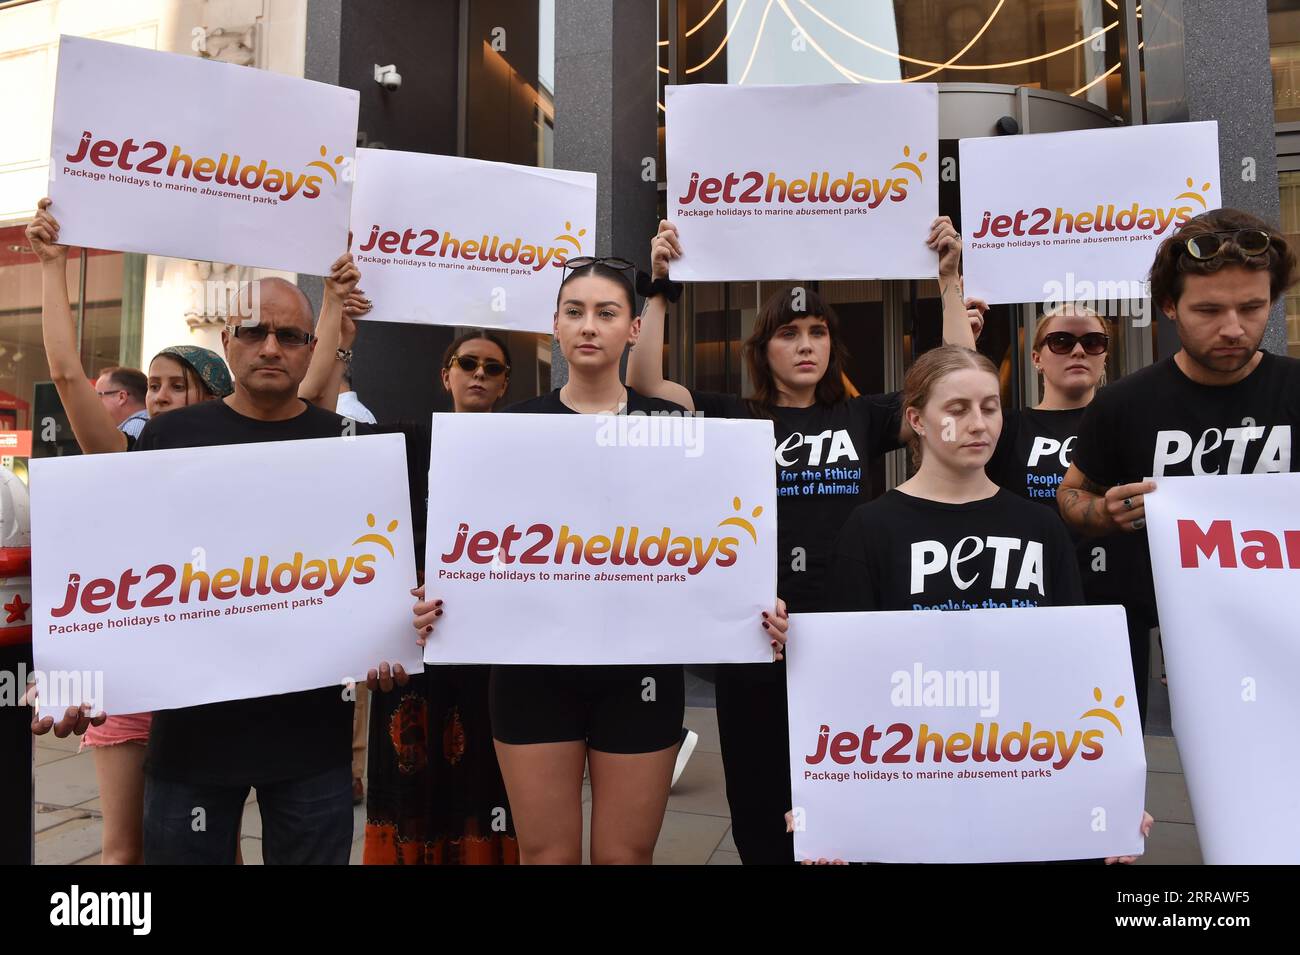 Londra, Inghilterra, Regno Unito. 7 settembre 2023. Alla riunione annuale di Jet2, i manifestanti stanno evidenziando le preoccupazioni sui parchi marini. I sostenitori di PETA vogliono che Jet2holidays riconsideri il loro sostegno a questi parchi. Questa azione fa parte della campagna PETA in corso, che segna il suo anniversario di un anno. Nonostante la pressione, Jet2holidays promuove e vende ancora i biglietti per questi luoghi. (Immagine di credito: © Thomas Krych/ZUMA Press Wire) SOLO USO EDITORIALE! Non per USO commerciale! Foto Stock